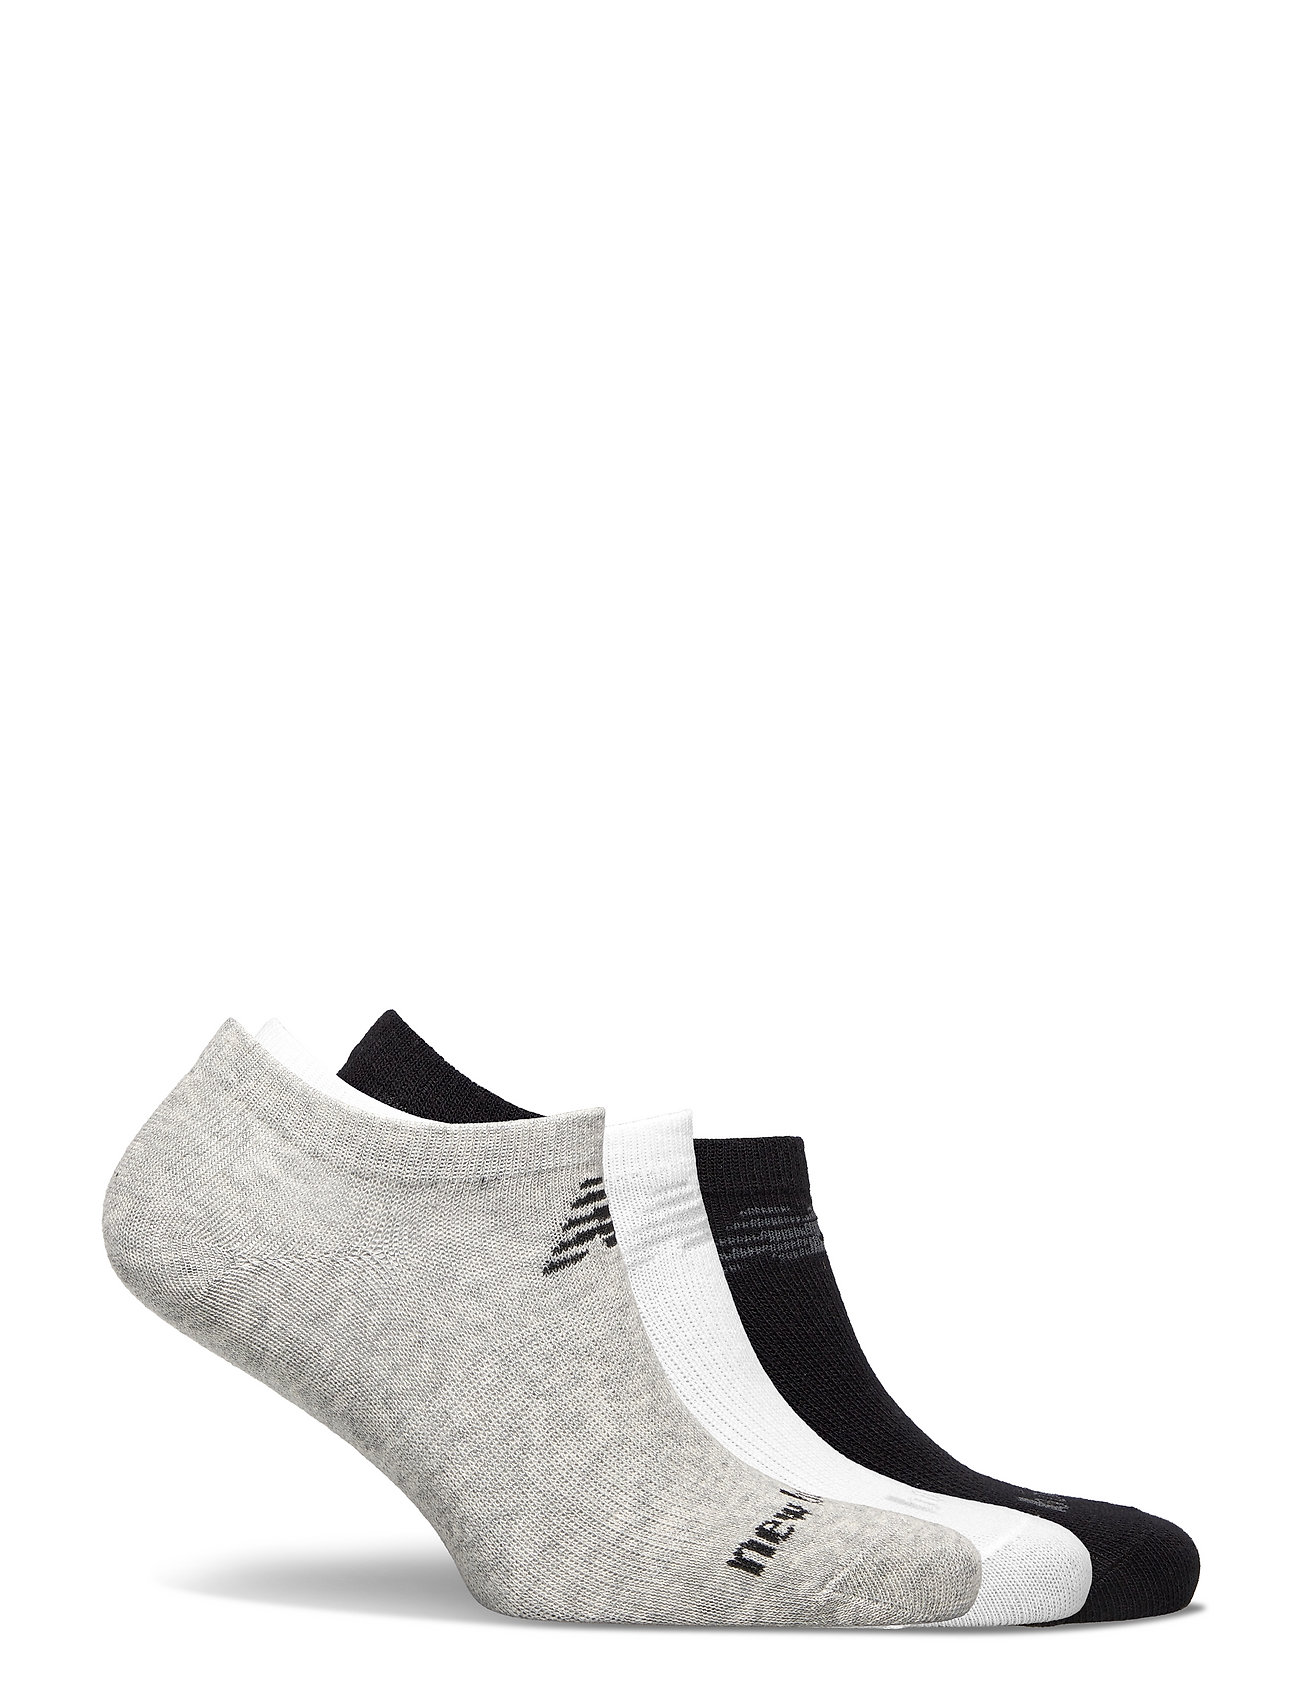 New Balance - Performance Cotton Flat Knit No Show Socks 3 Pack - Équipement de course à pied - white multi - 1